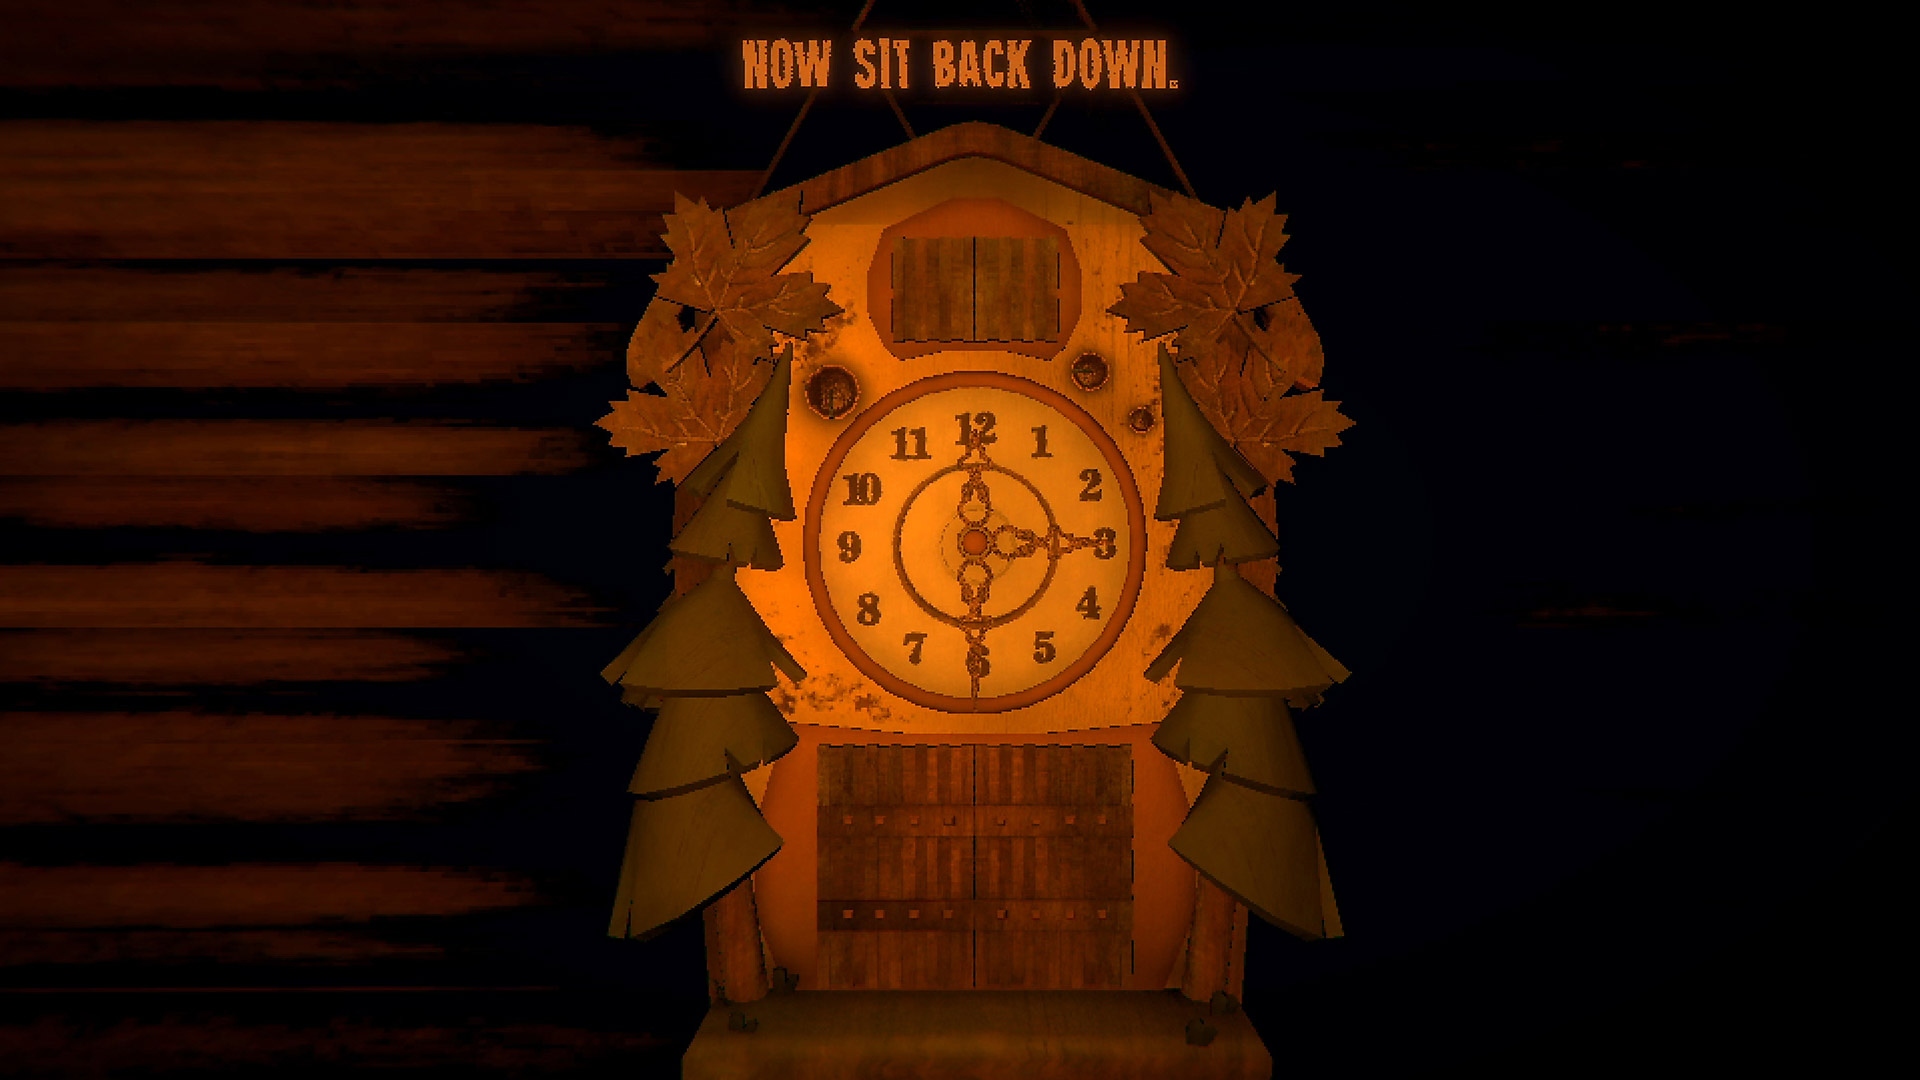 Captura de pantalla del juego de Inscryption con un reloj cucú con tres agujas.